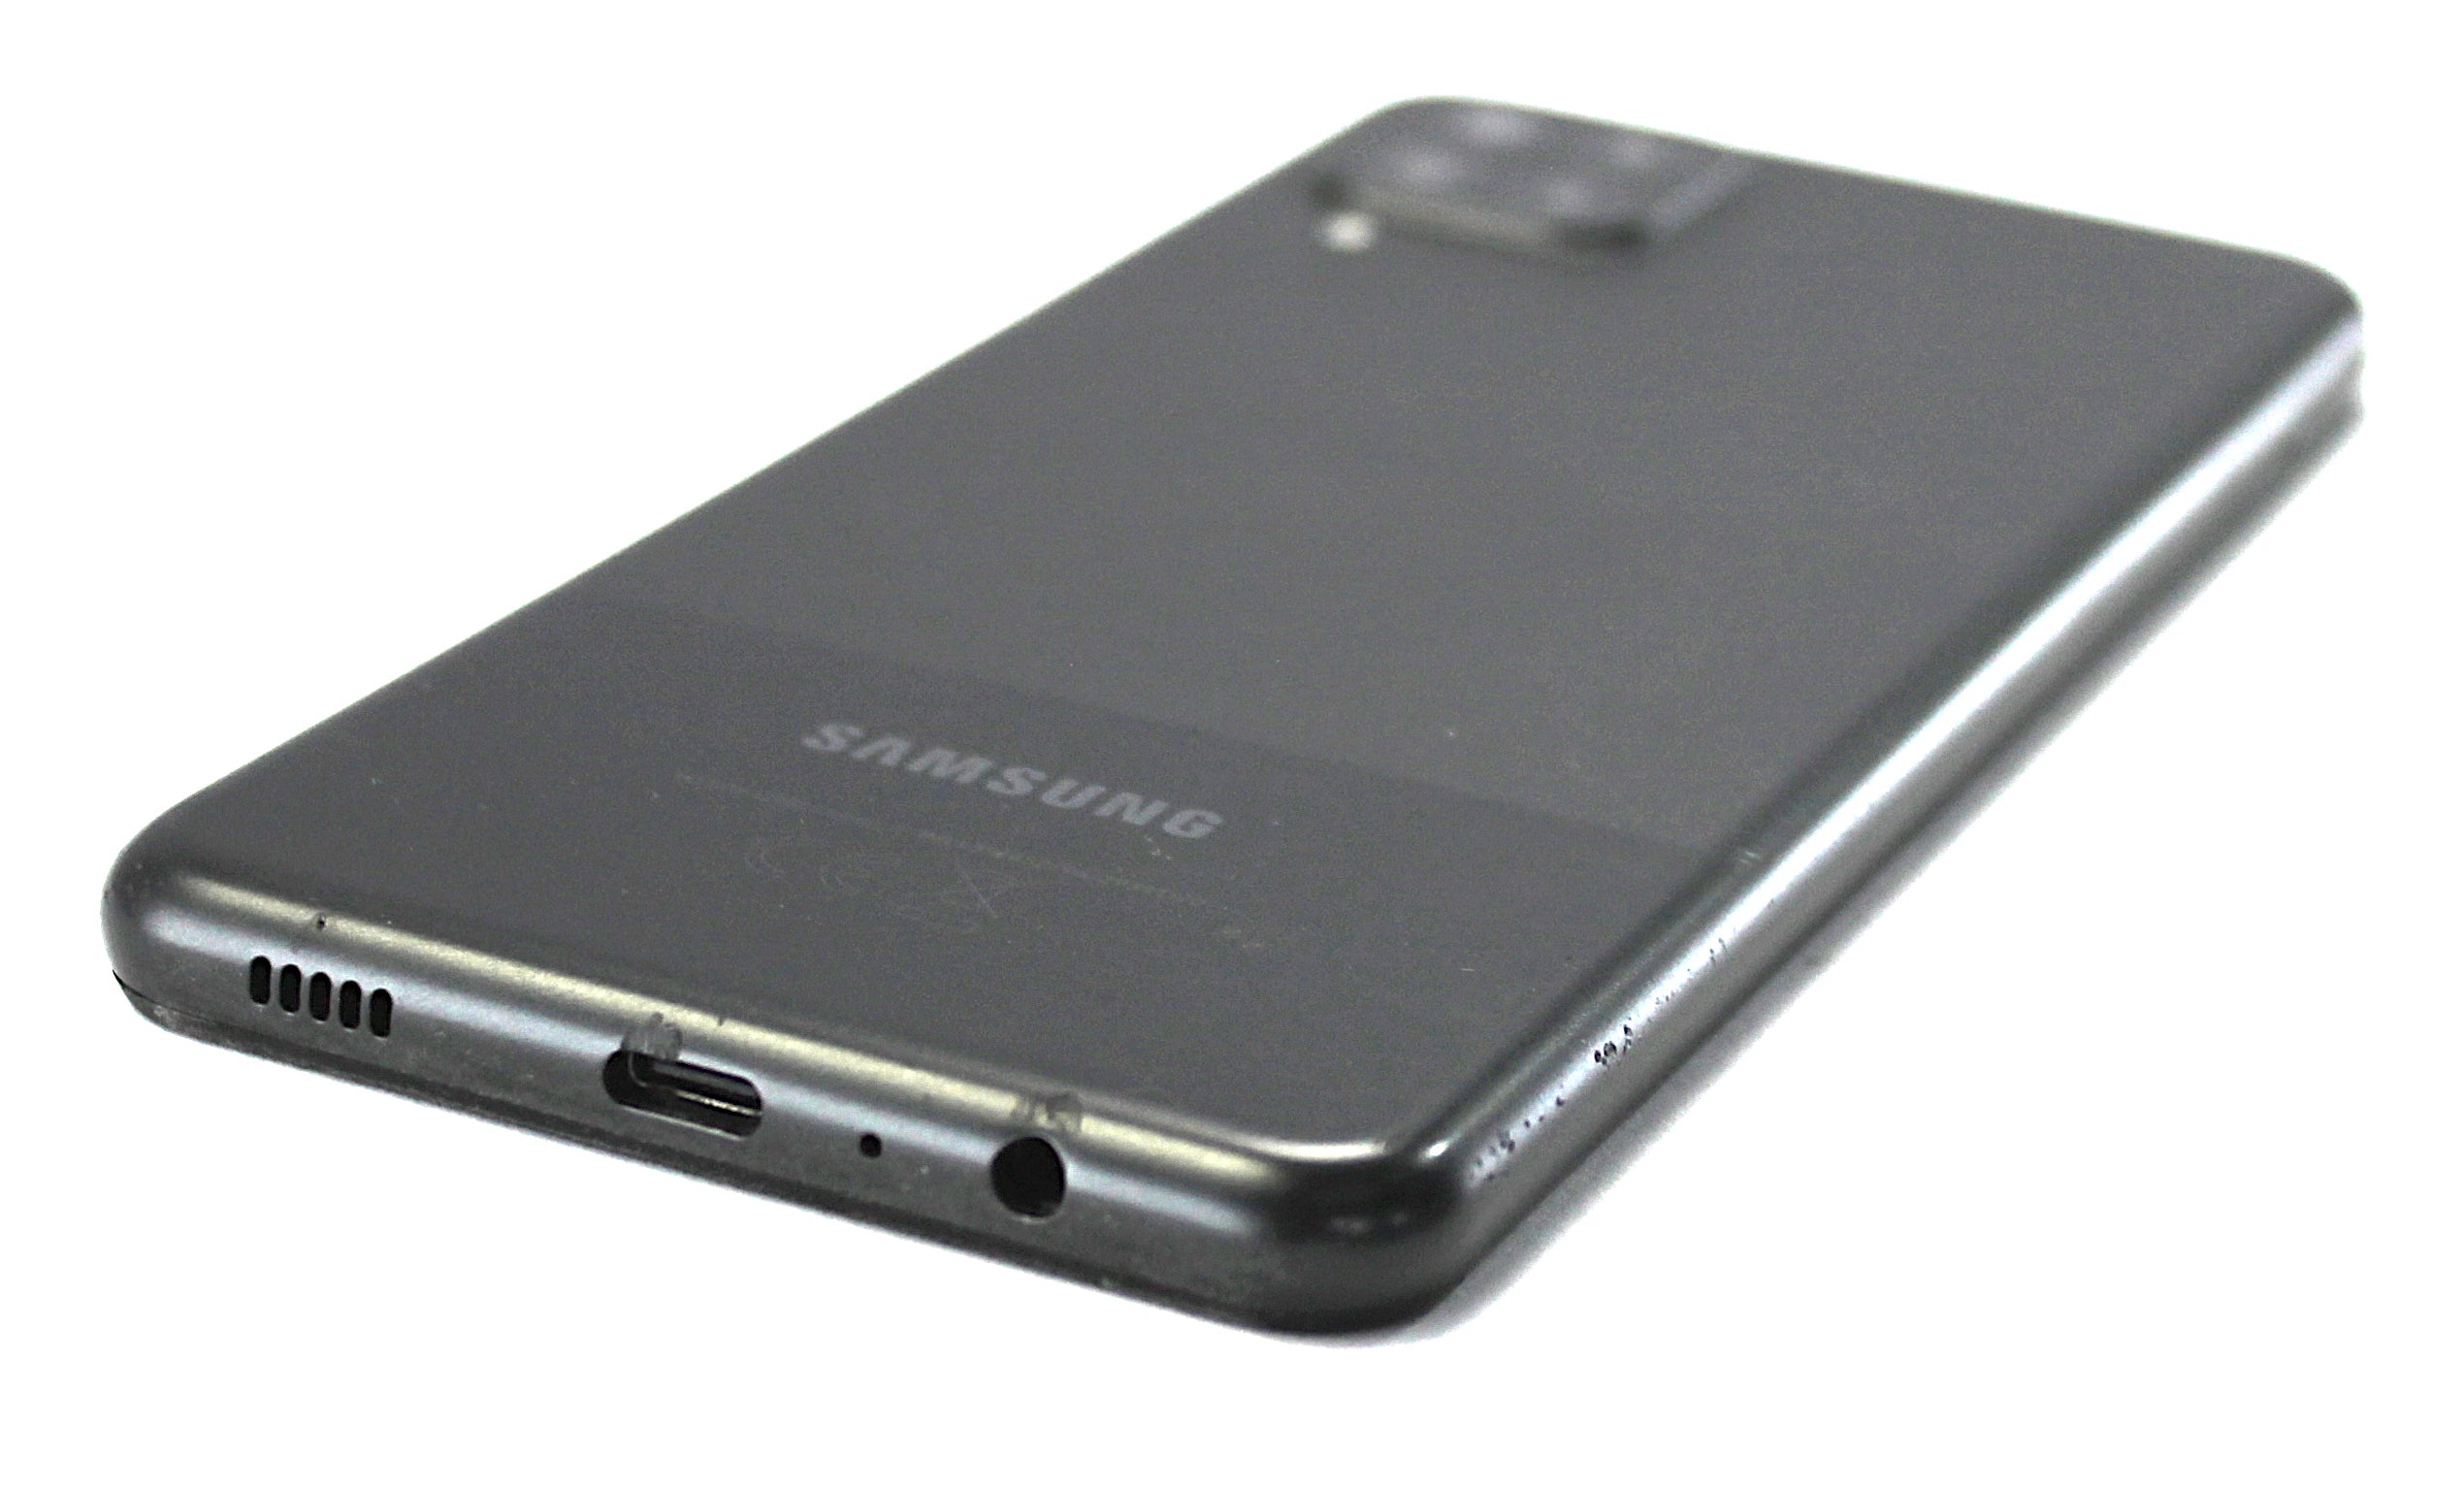 Samsung Galaxy A12 Smartphone, 64GB, Vodafone, Black, SM-A125F